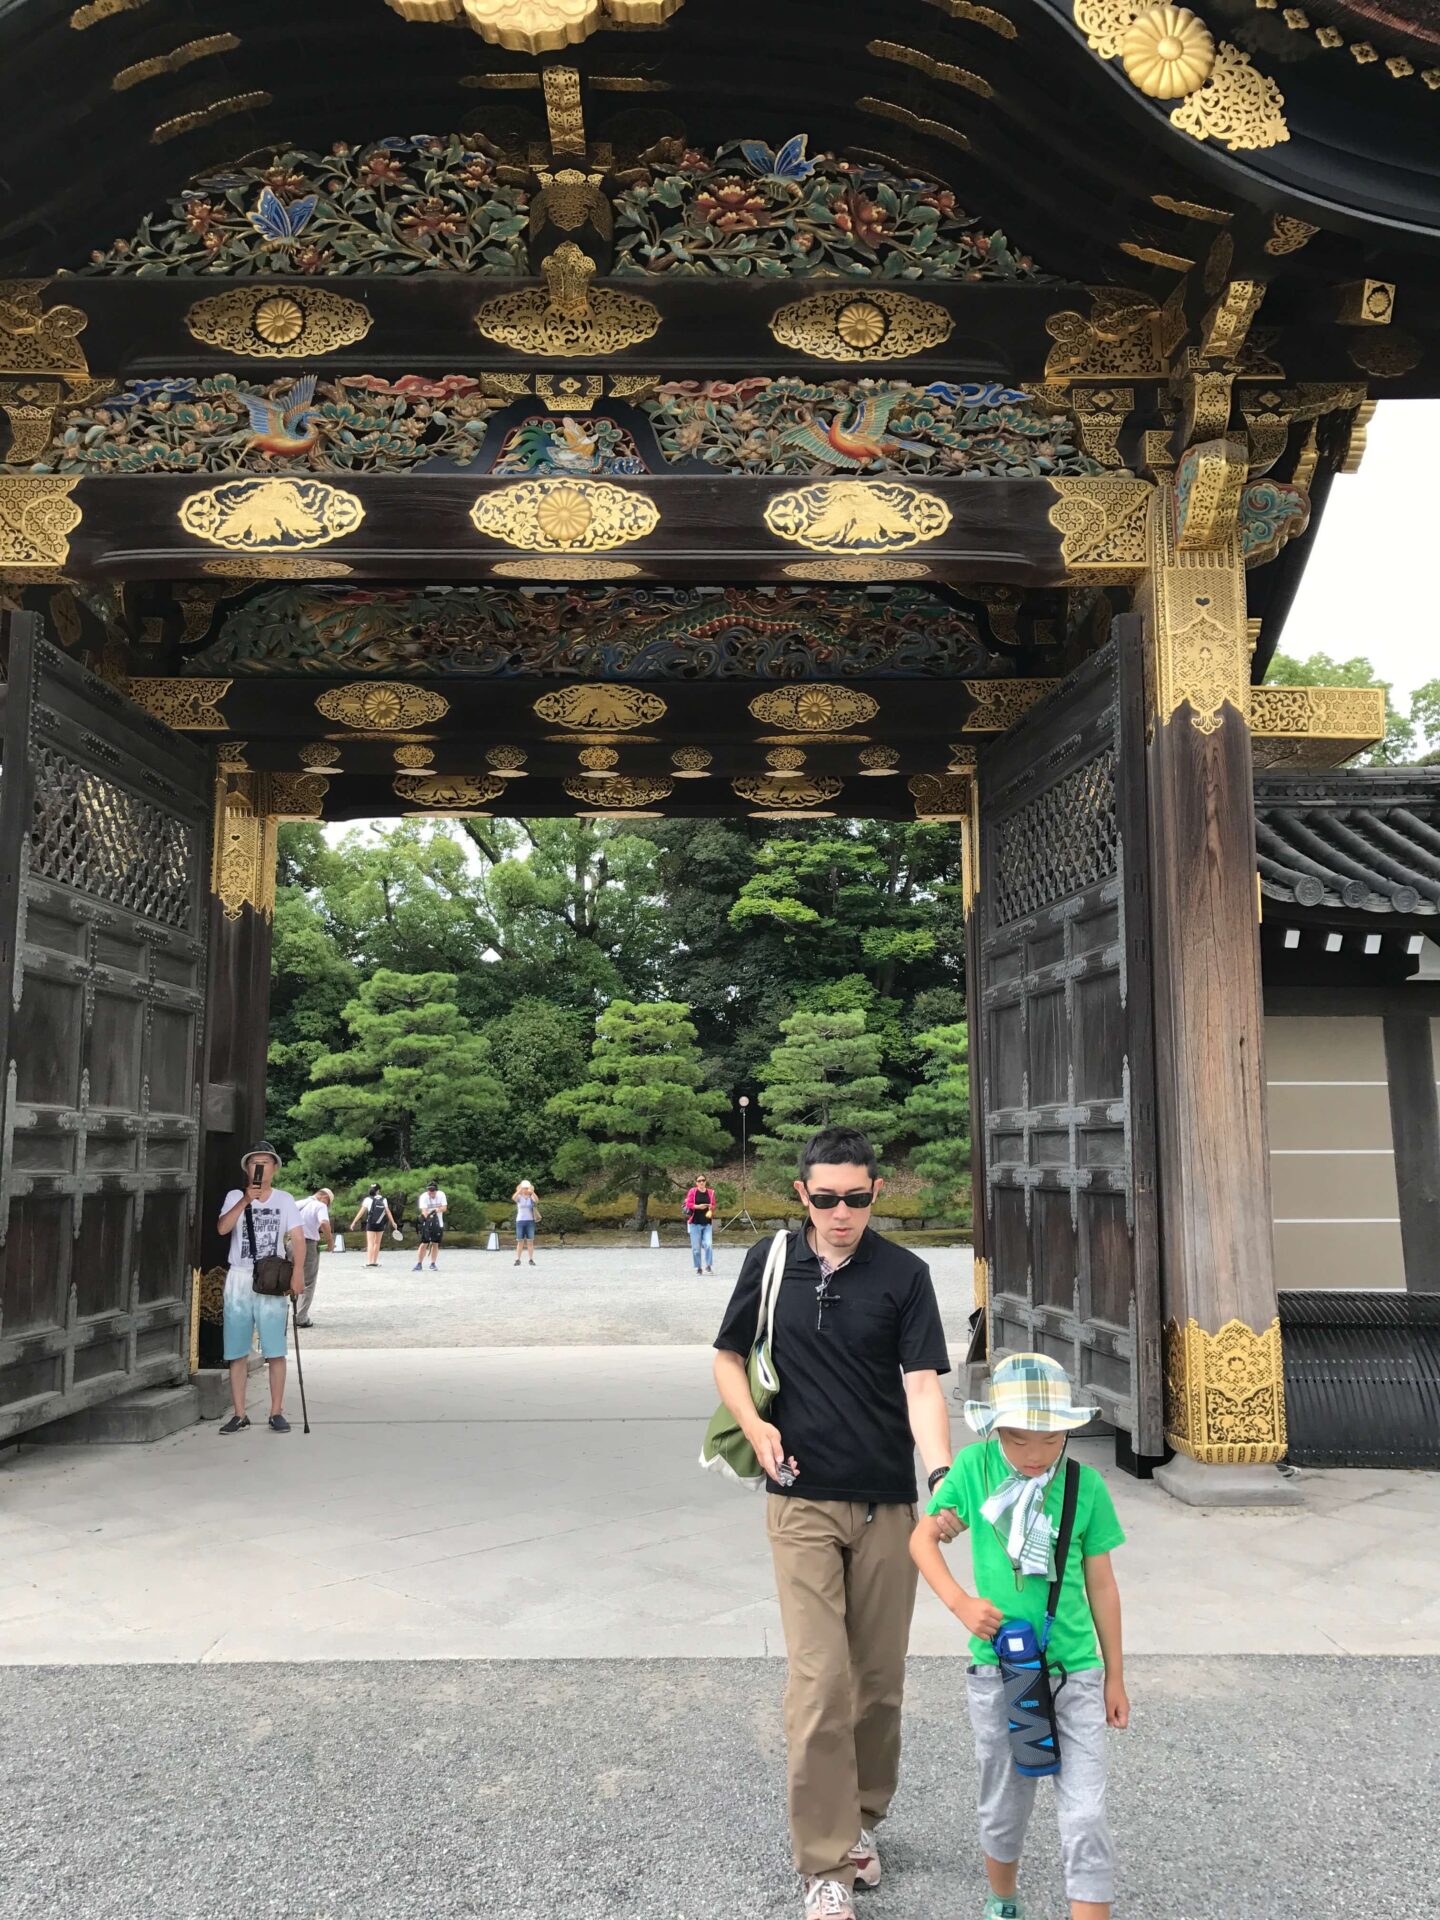 竹浪さんが、竹浪さんの息子さんと共に、二条城を散策した際のお写真です。サングラスをかけ目をつむった竹浪さんが、息子さんの肘に手をかけ先導されながら、二条城の門をくぐっています